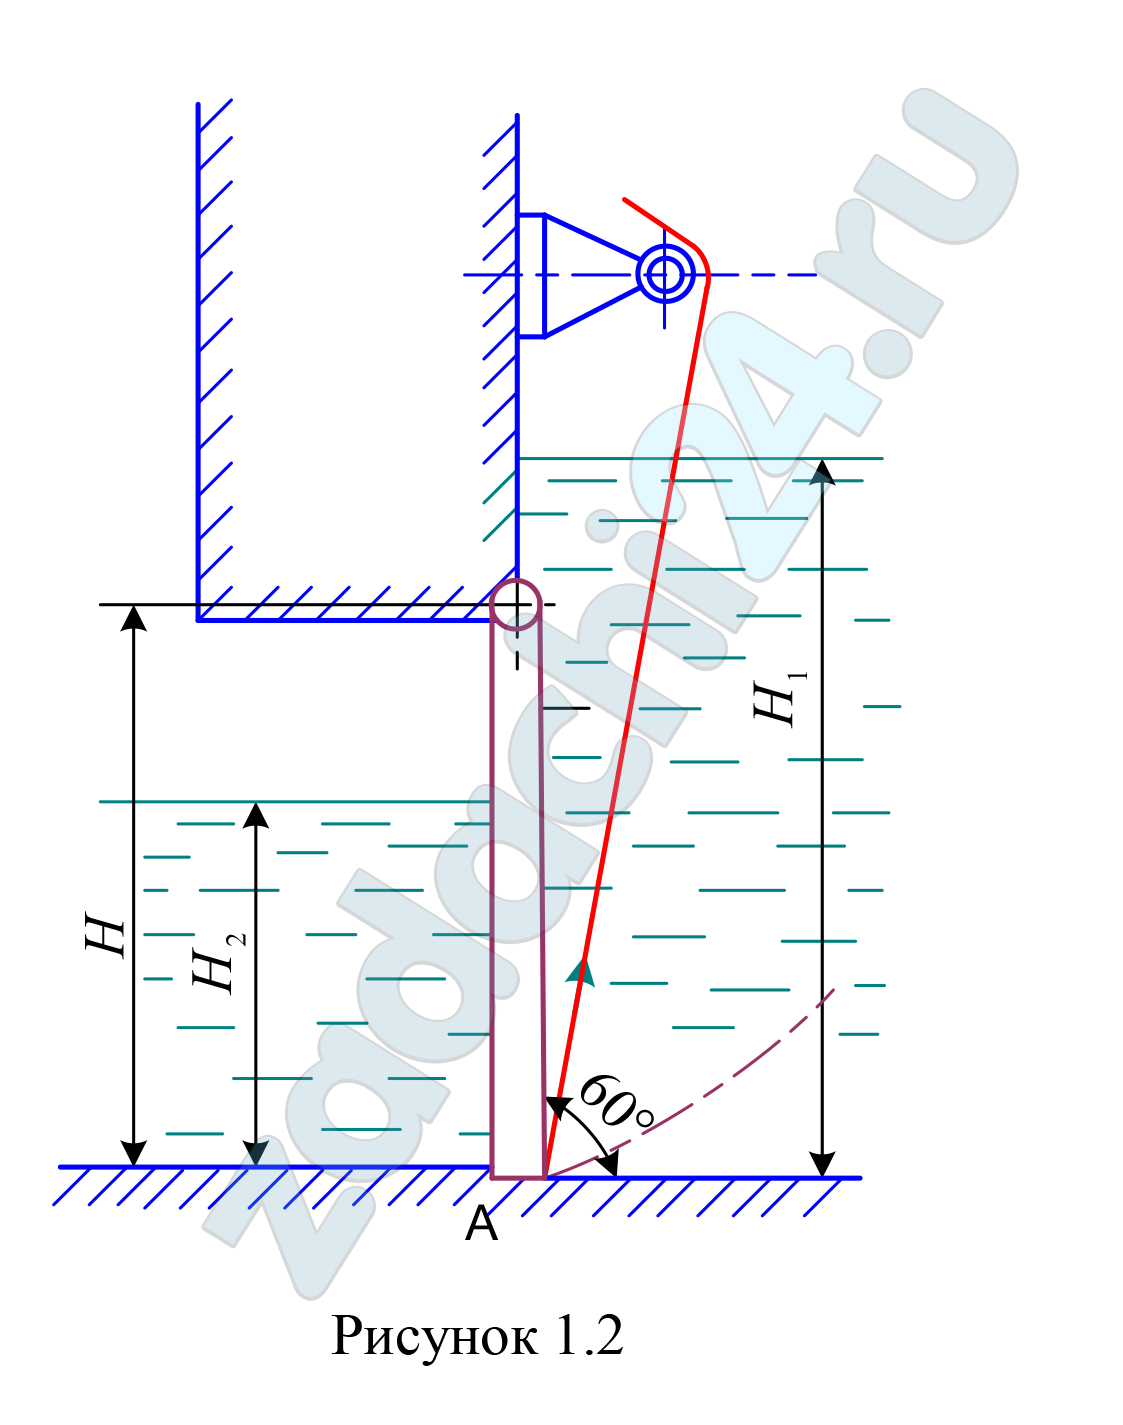 Прямоугольный поворотный щит (рис.1.2) шириной В = 4 м и высотой Н  закрывает выпускное отверстие плотины. Справа от щита уровень воды Н1, слева Н2, плотность воды ρ = 1000 кг/м³. 1 Определить начальную силу Т натяжения троса, необходимую для открытия щита, если пренебречь трением в цапфах. 2 С какой силой Р щит прижимается к порогу А в закрытом положении, если принять, что по боковым сторонам щита опоры отсутствуют? 3 Построить результирующую эпюру гидростатического давления на щит, предварительно построив эпюры давления на щит слева и справа.